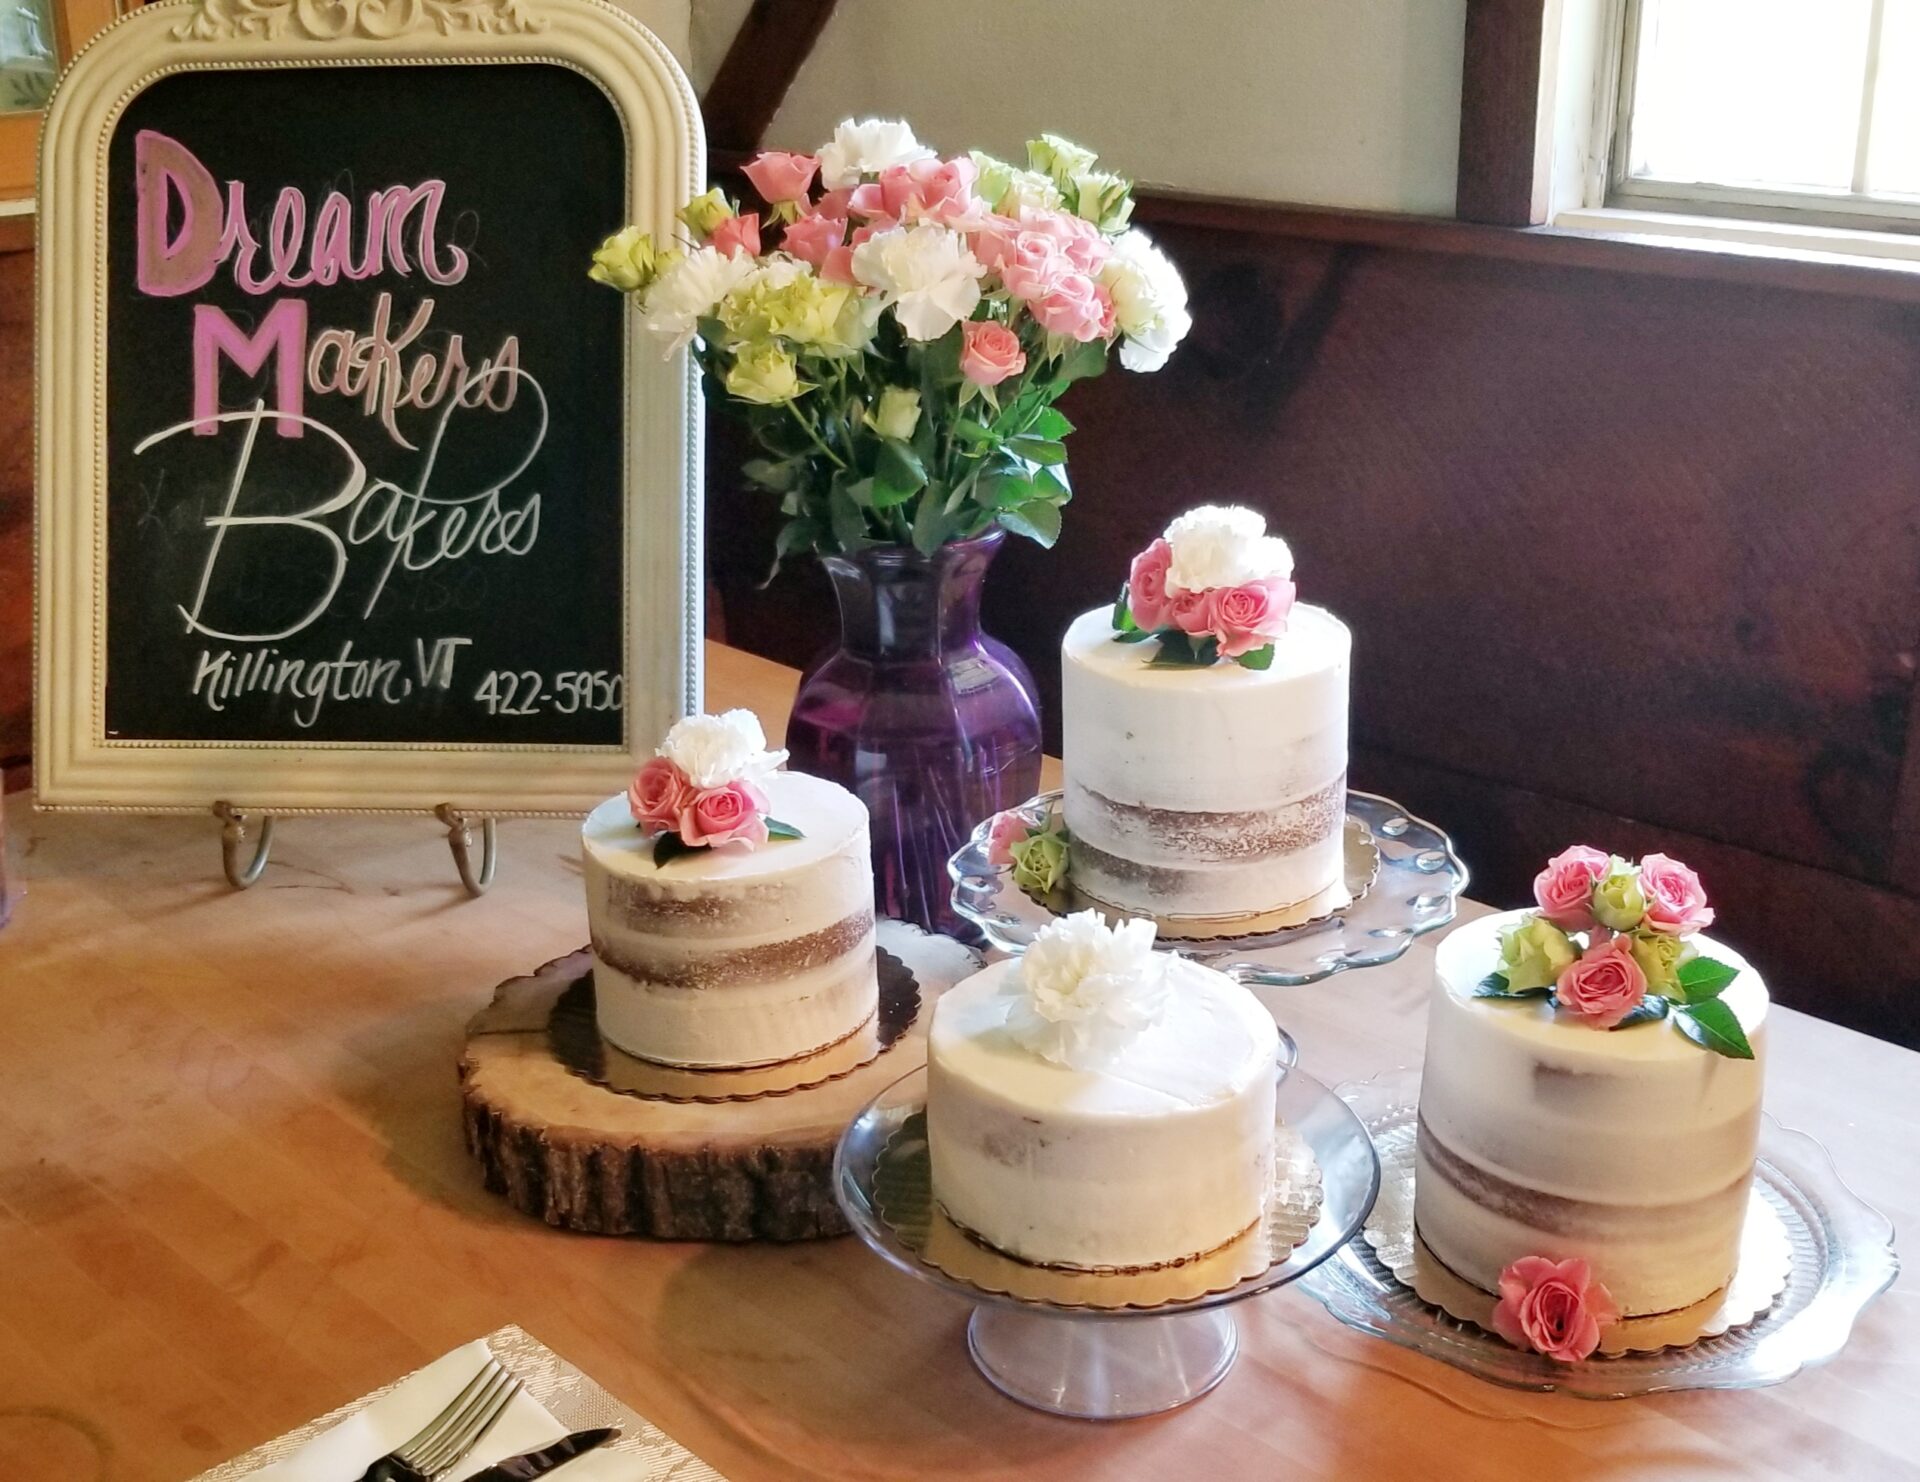 https://dreammakerbakers.com/wp-content/uploads/2021/04/Wedding-Tasting-at-Dream-Maker-Bakers.jpg